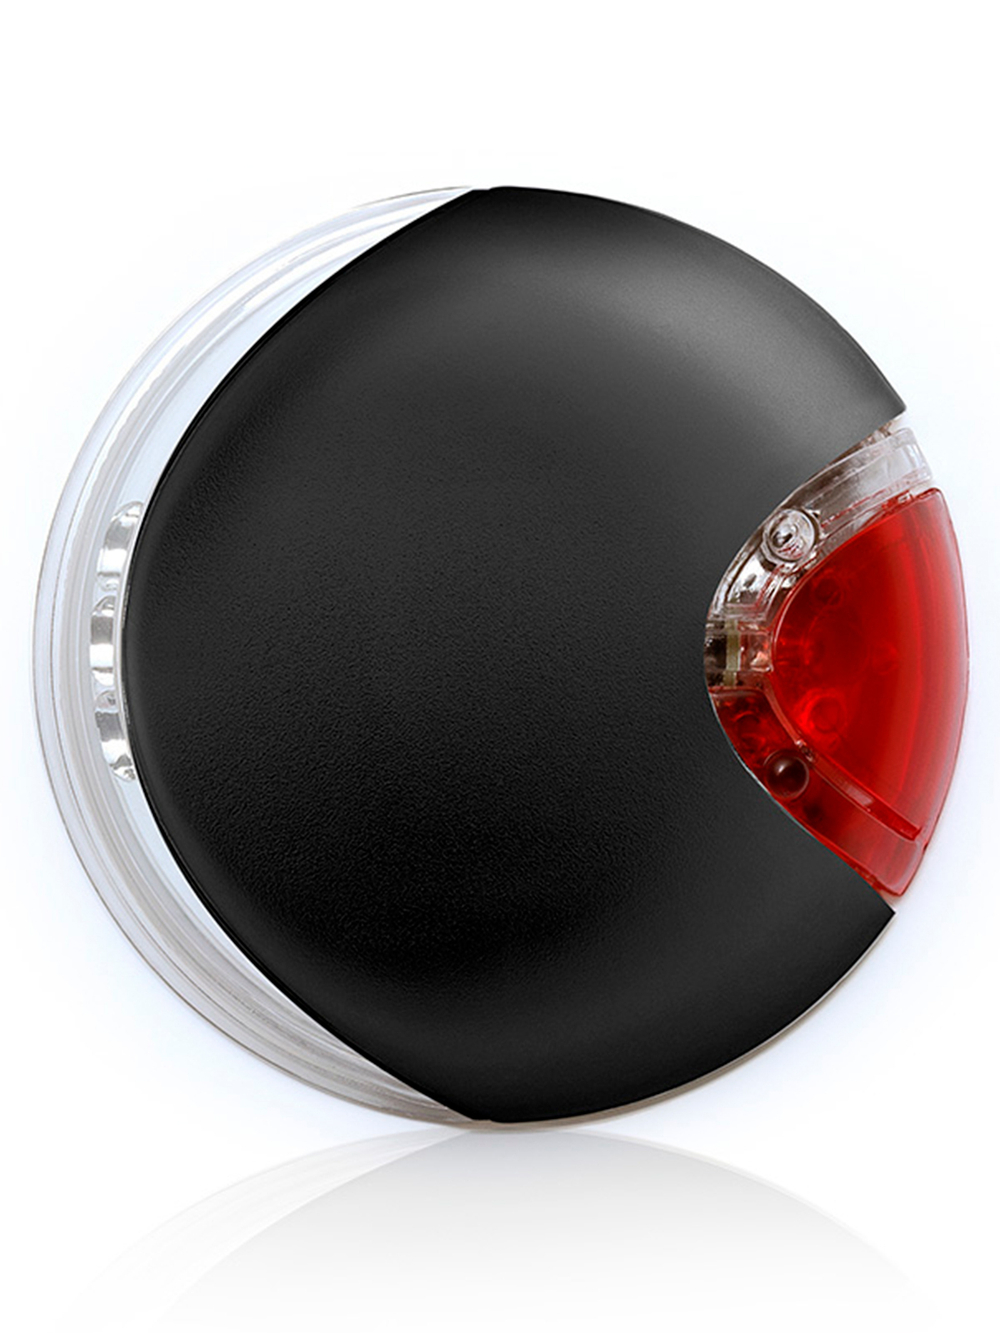 flexi аксессуар LED Lighting Systeм (подсветка на корпус рулетки) черный